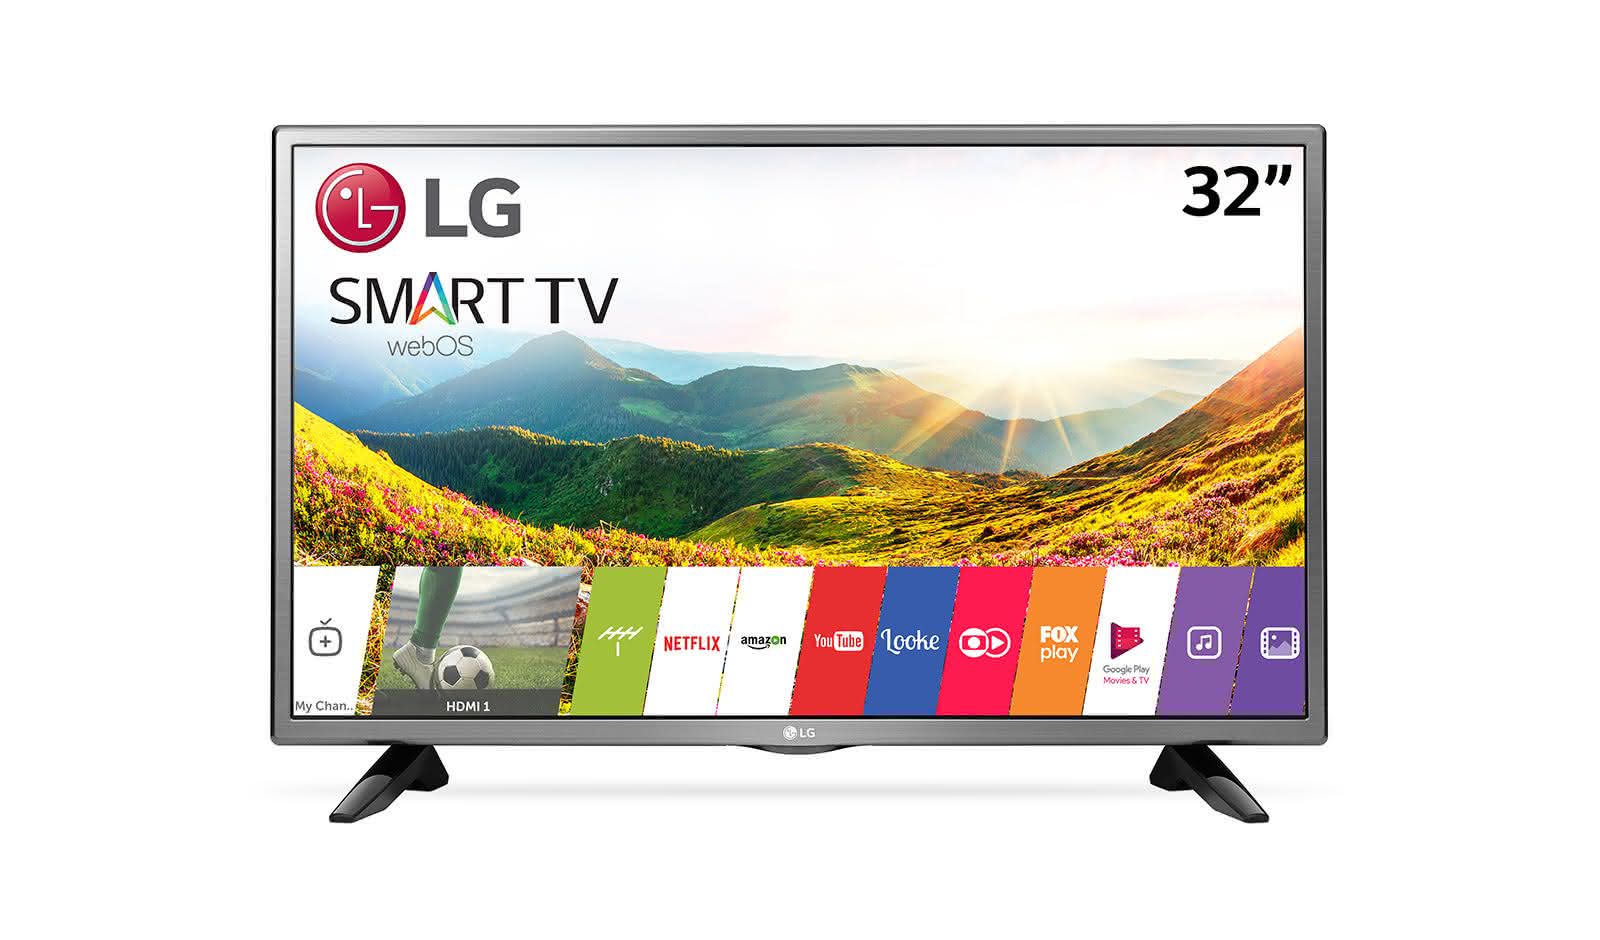 Телевизор лджи смарт. LG Smart TV lh570u. Телевизор LG 32 дюйма смарт. Телевизор LG Smart TV 32lh570u. Телевизор LG 32lm6300.